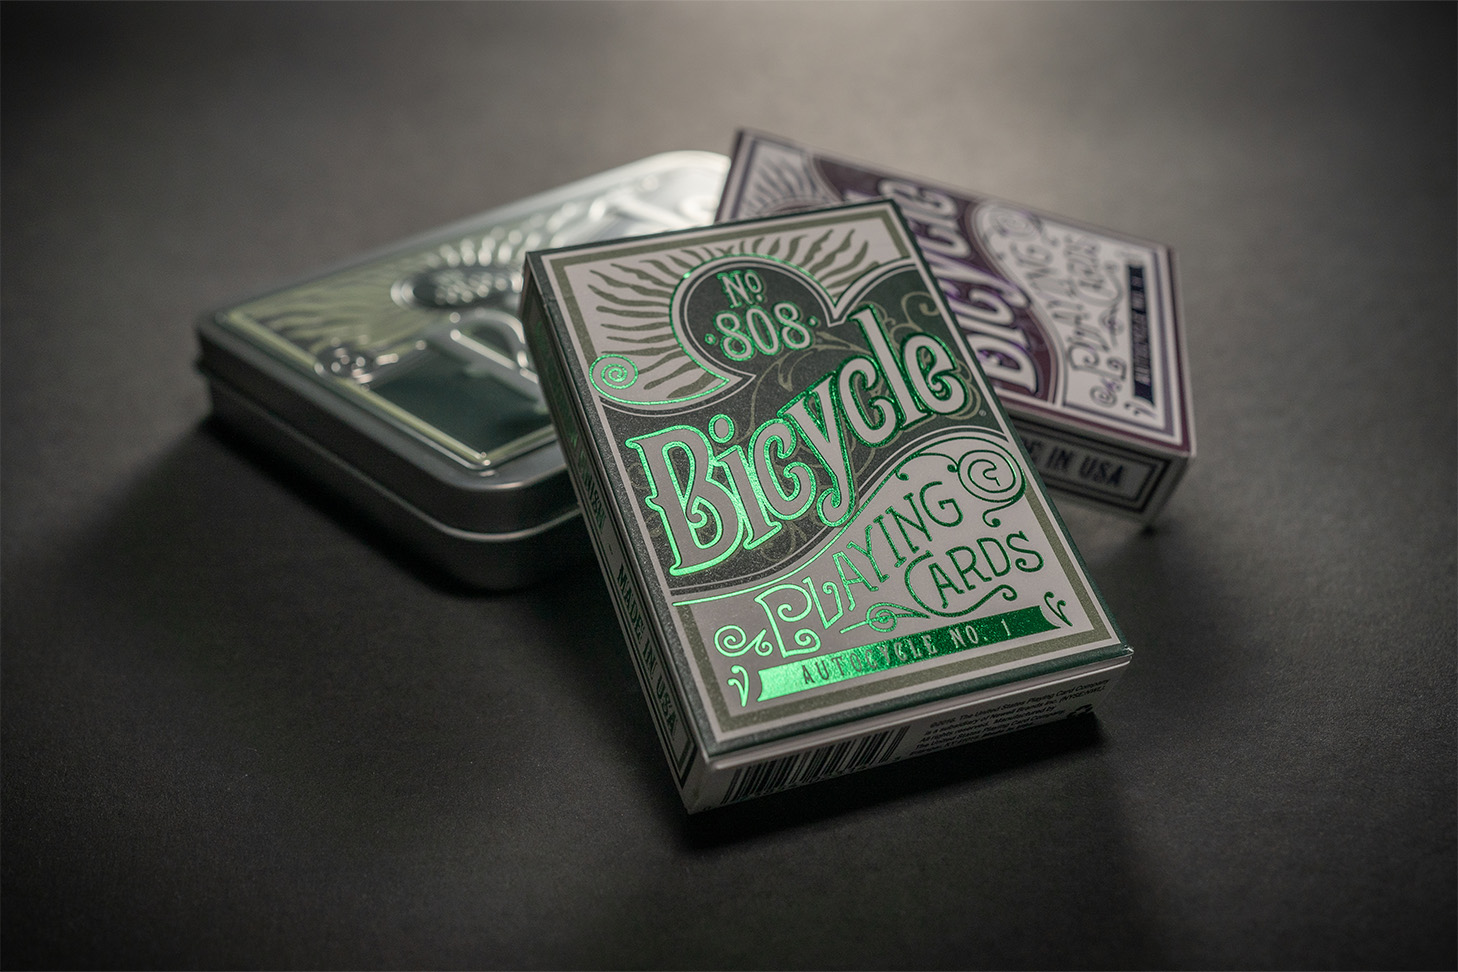 Premium Spielkarten im Collectors Tin - Nebeneinander angeordnete Verpackungen, geschlossen und bereit für den Einsatz bei guten Kartenspielen, Zauberkunststücken und Magie. Perfekt gestaltet mit einem edlen Design von Bicycle Cards.